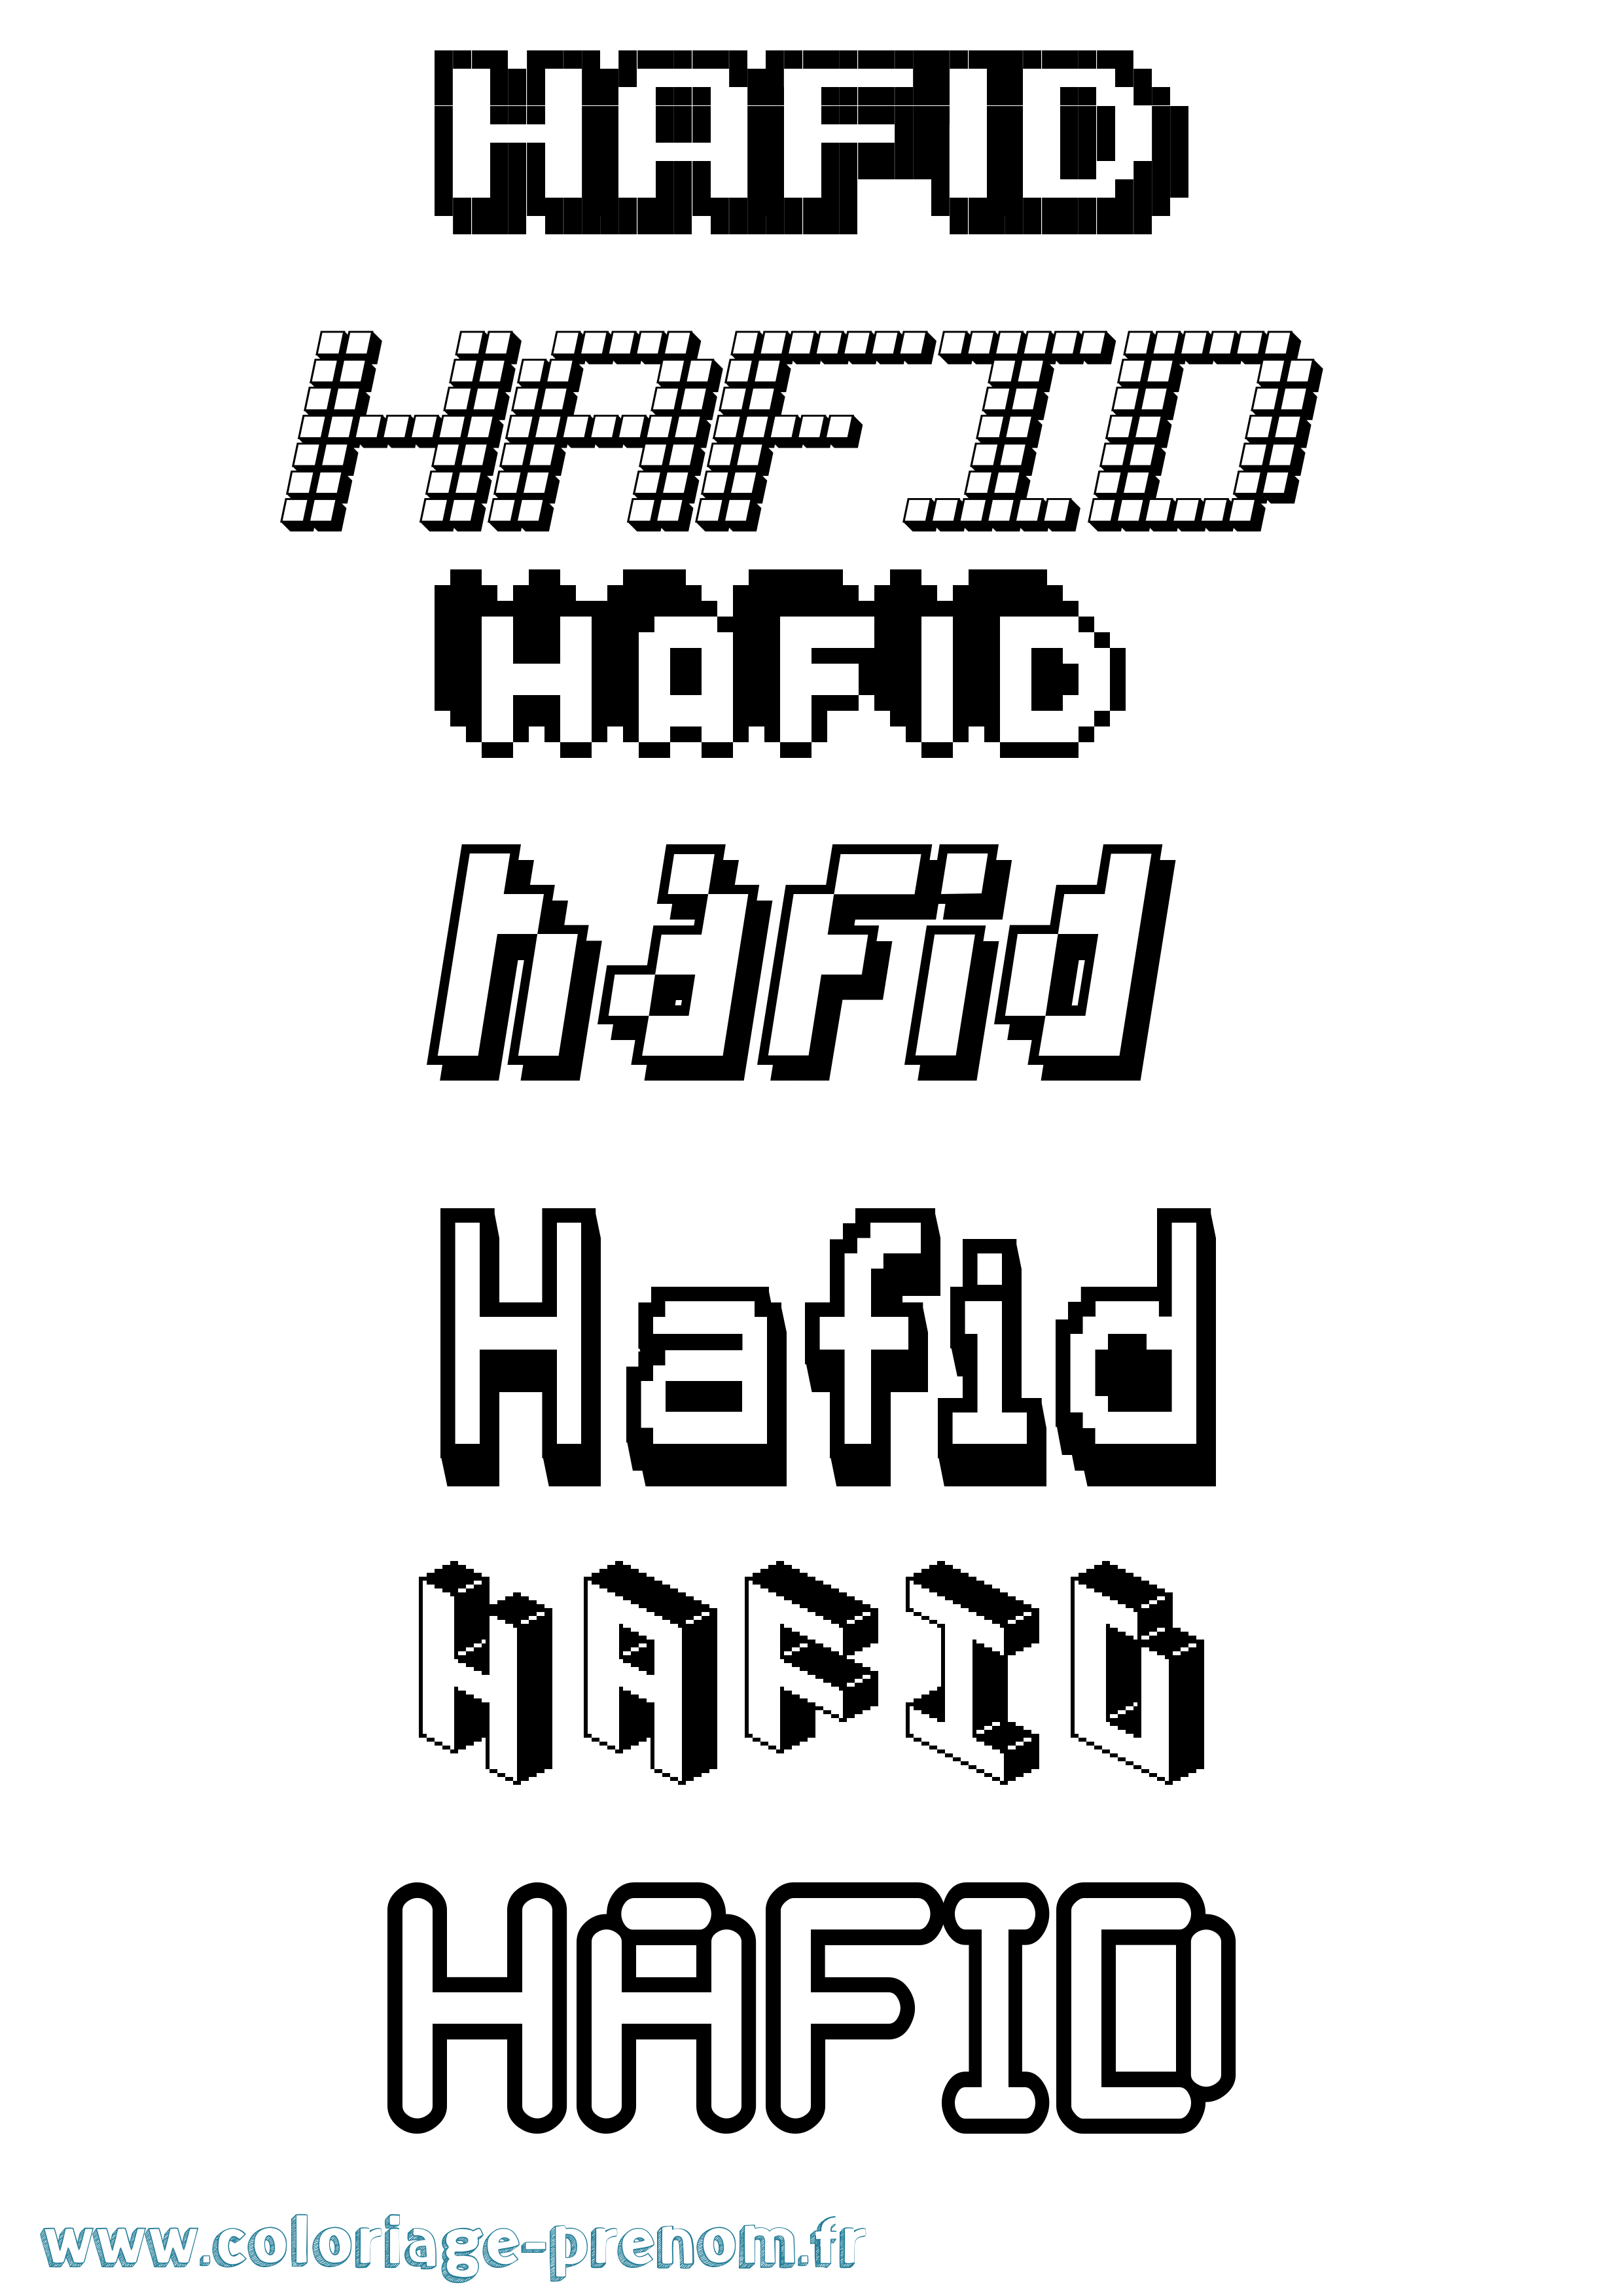 Coloriage prénom Hafid Pixel